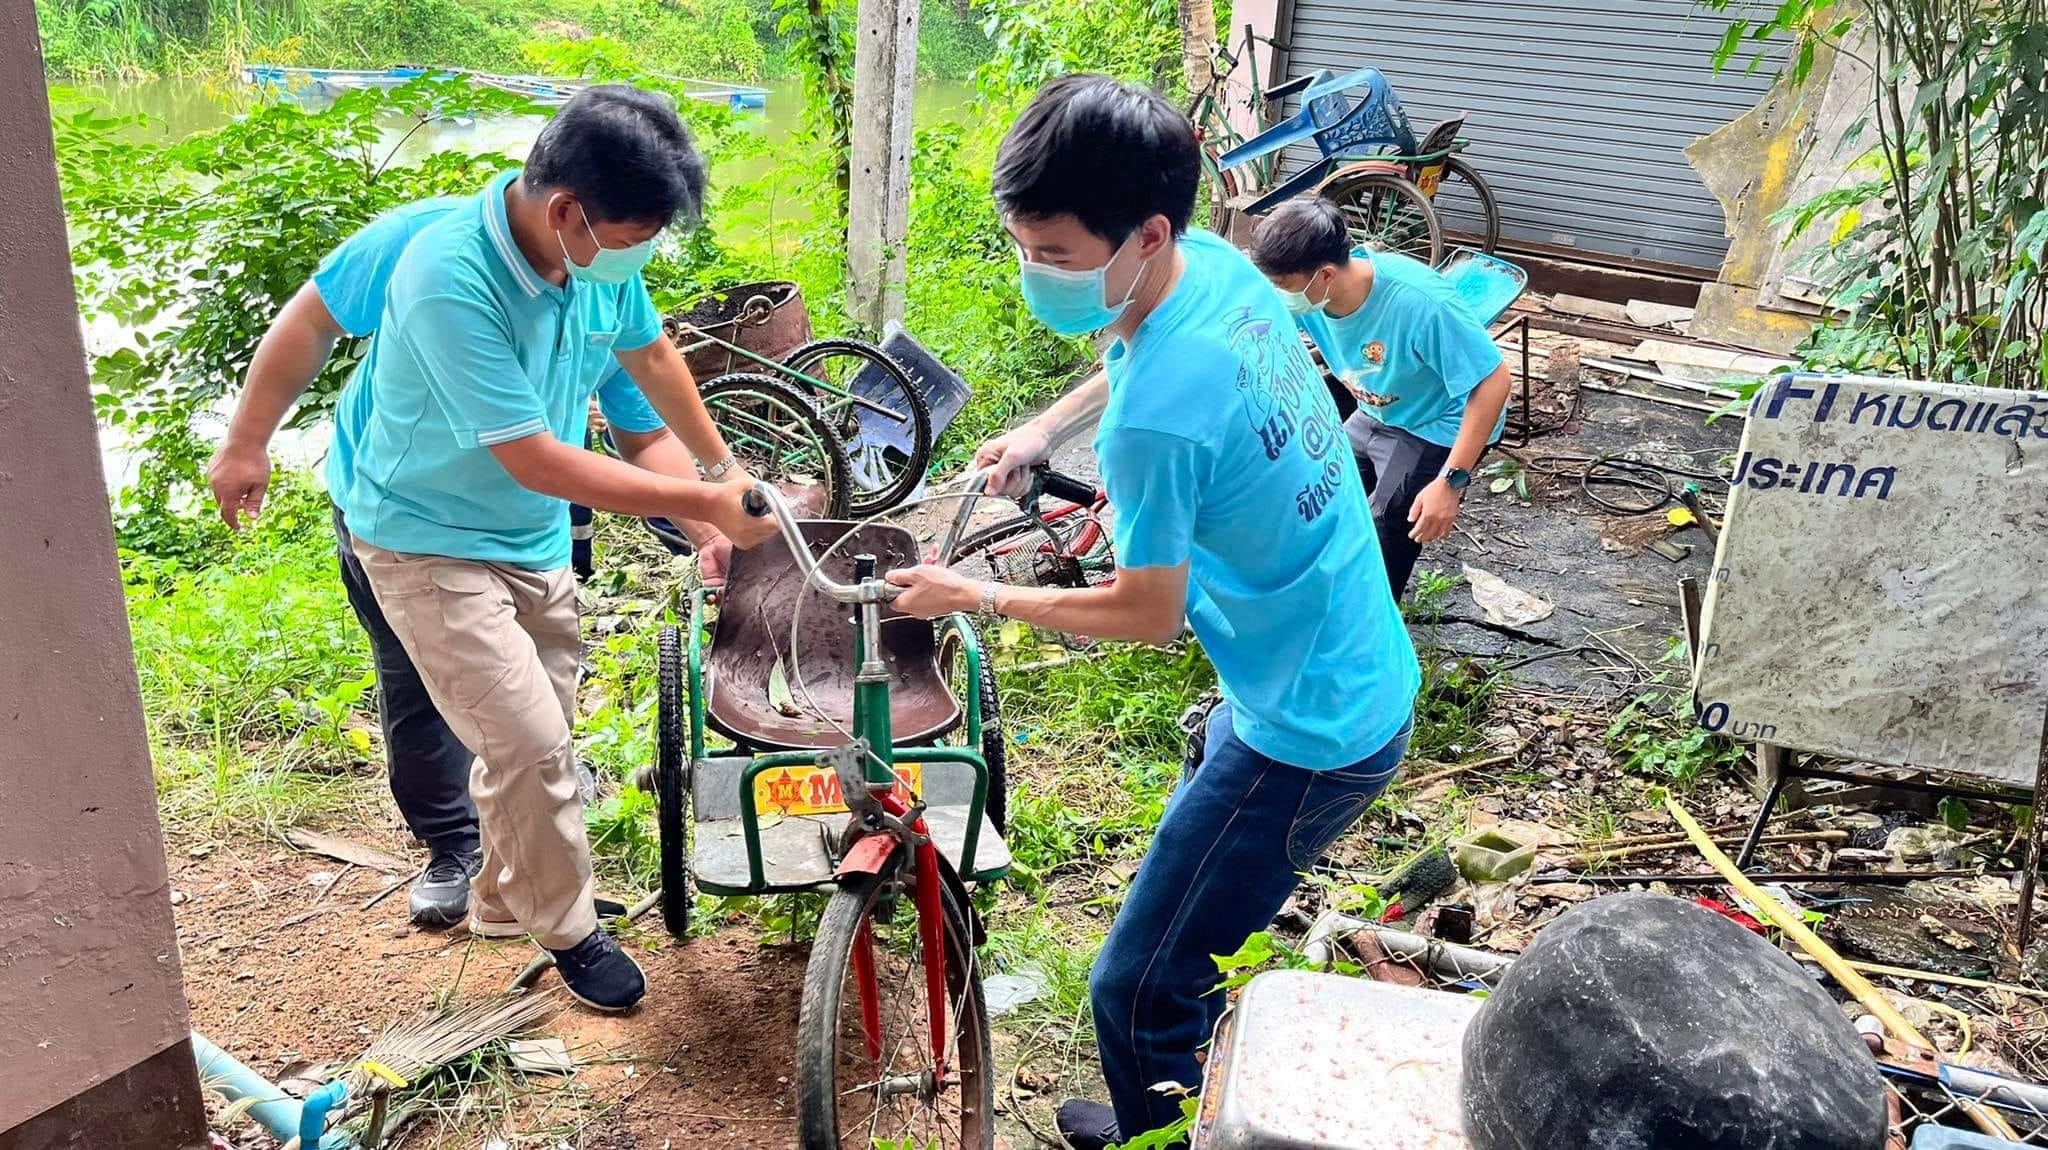 โครงการส่งเสริมปลูกป่าชุมชนและการปลูกหญ้าแฝก ขององค์การบริหารส่วนตำบลไชยสถาน